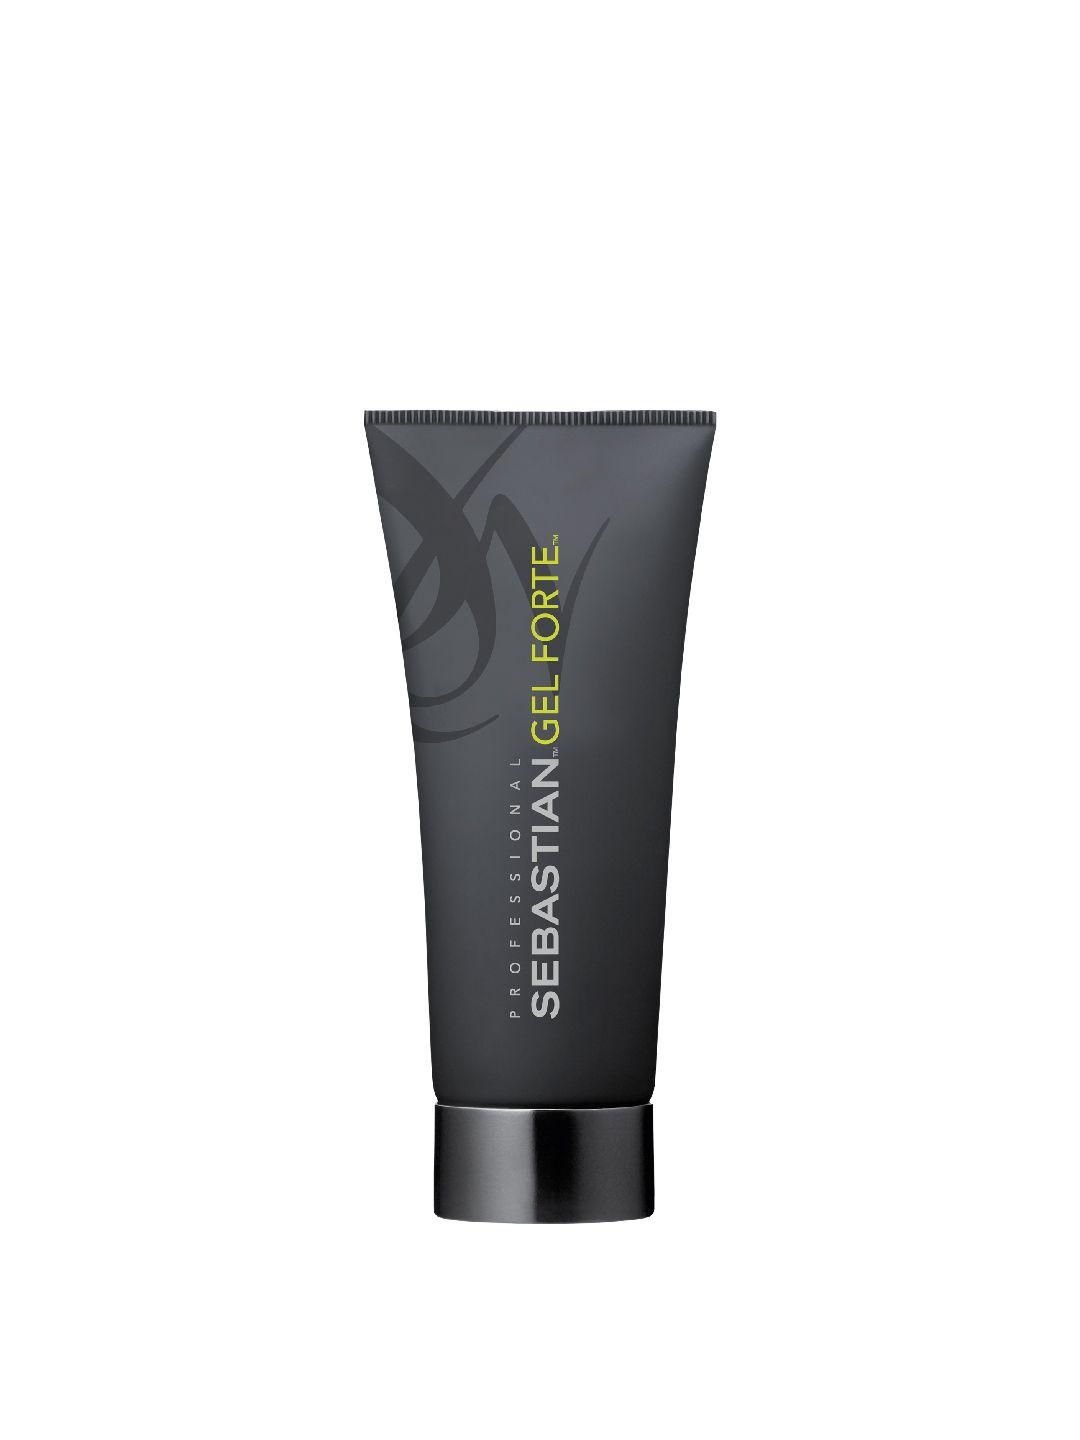 sebastian professional gel forte hair gel for stronger hold - 200 ml